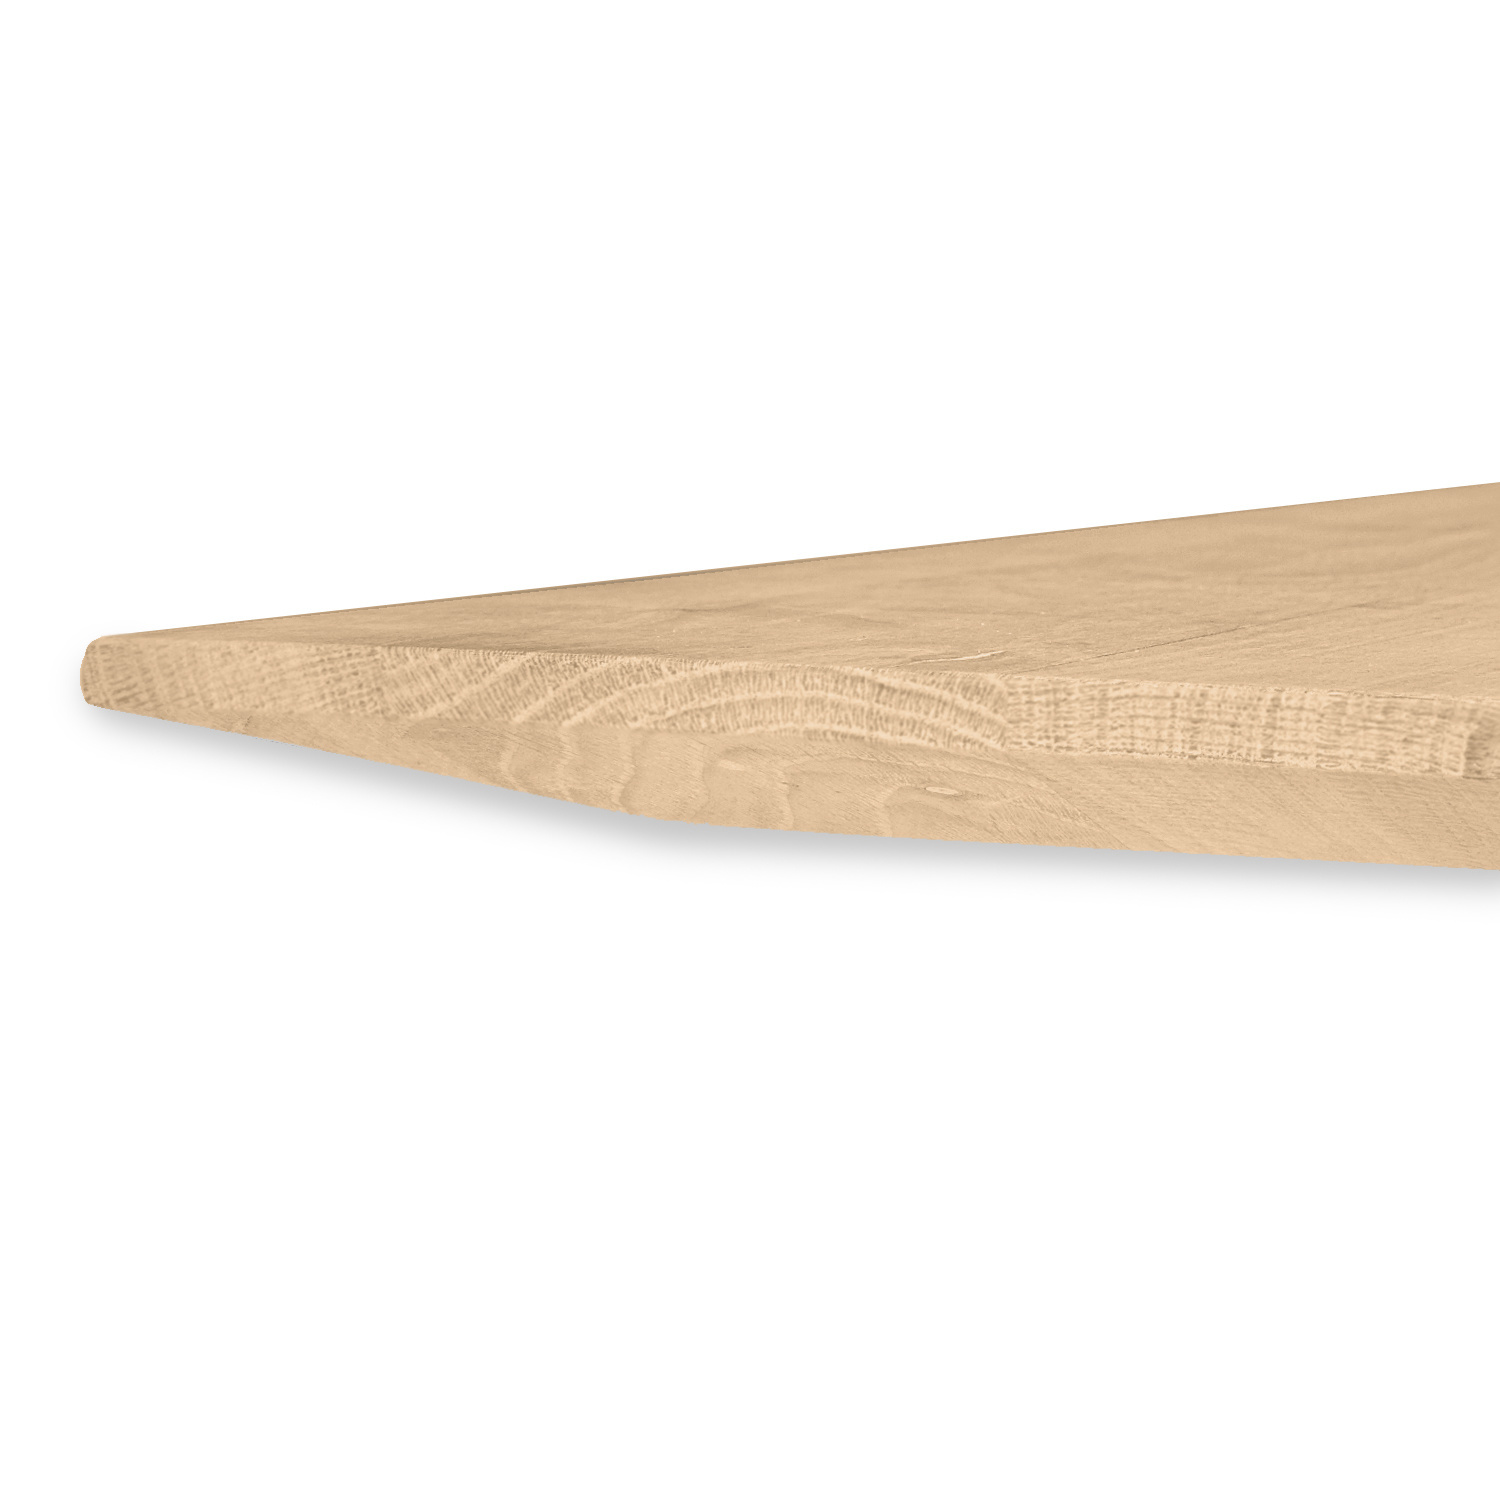  Tischplatte Eiche - Schweizer Kante - nach Maß - 2,7 cm dick (1-Schicht) - Breite Lamellen (10 - 12 cm breit) - Eichenholz A-Qualität - verleimt & künstlich getrocknet (HF 8-12%) - 50-120x50-248 cm